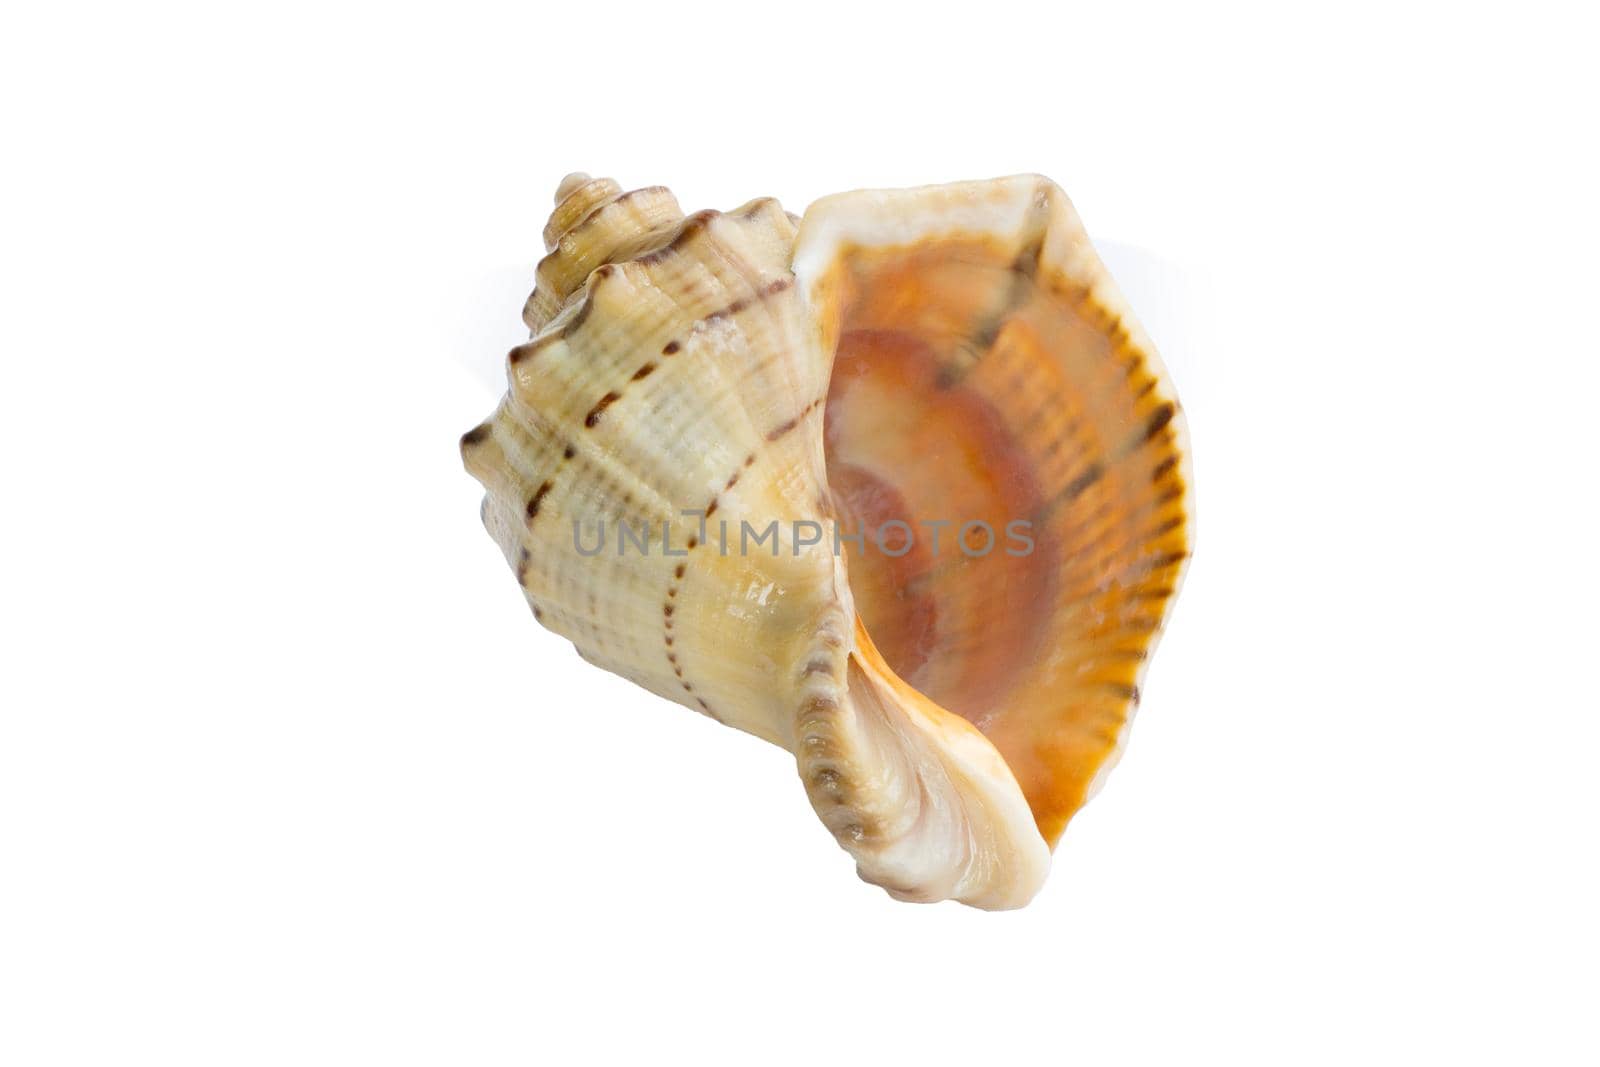 Big light bright yellow orange gastropod seashell close-up on white by VeraVerano